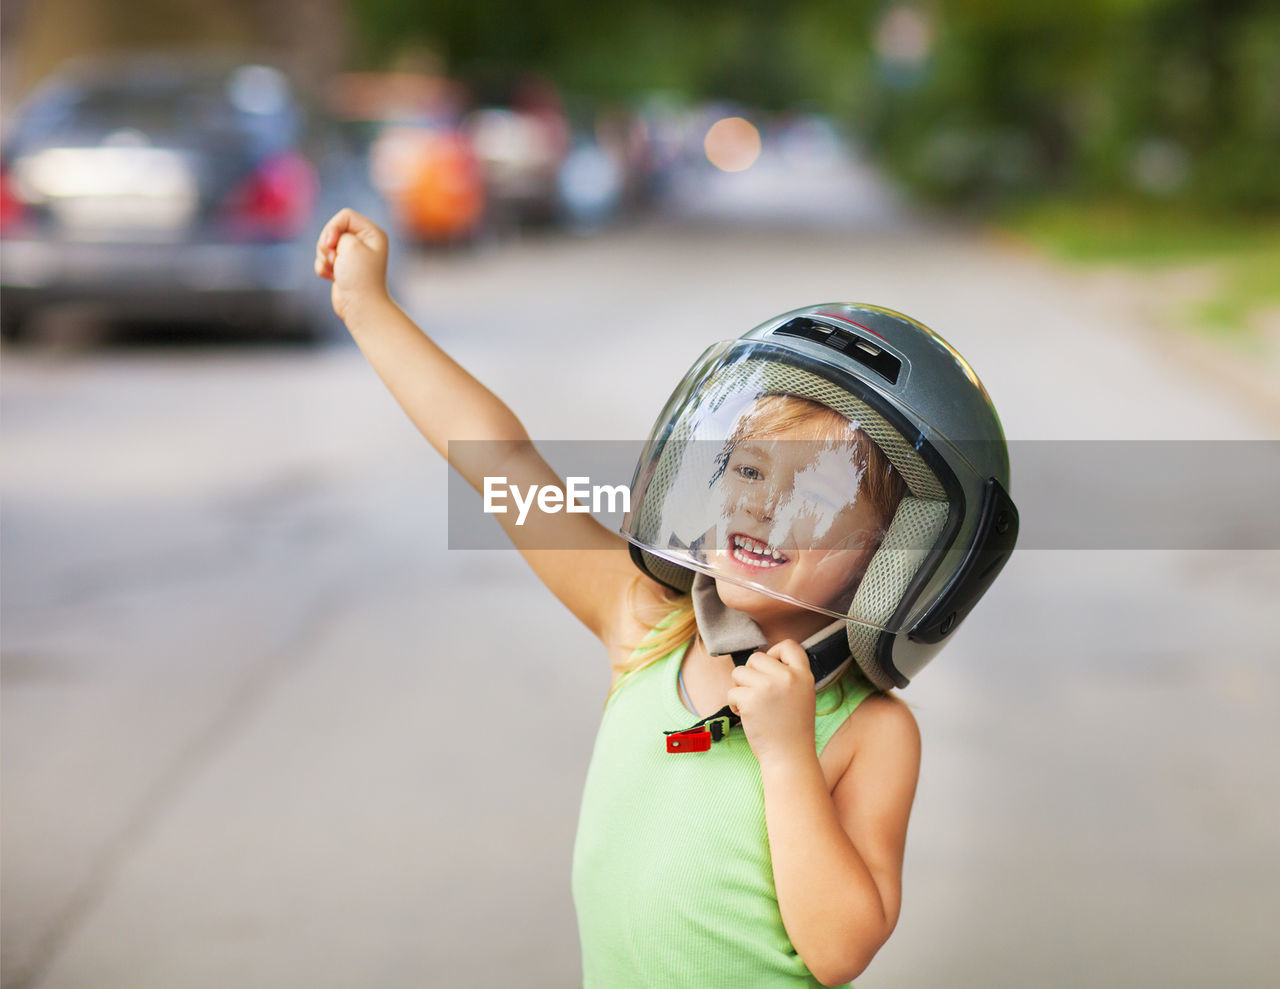 Cheerful girl wearing helmet outdoors